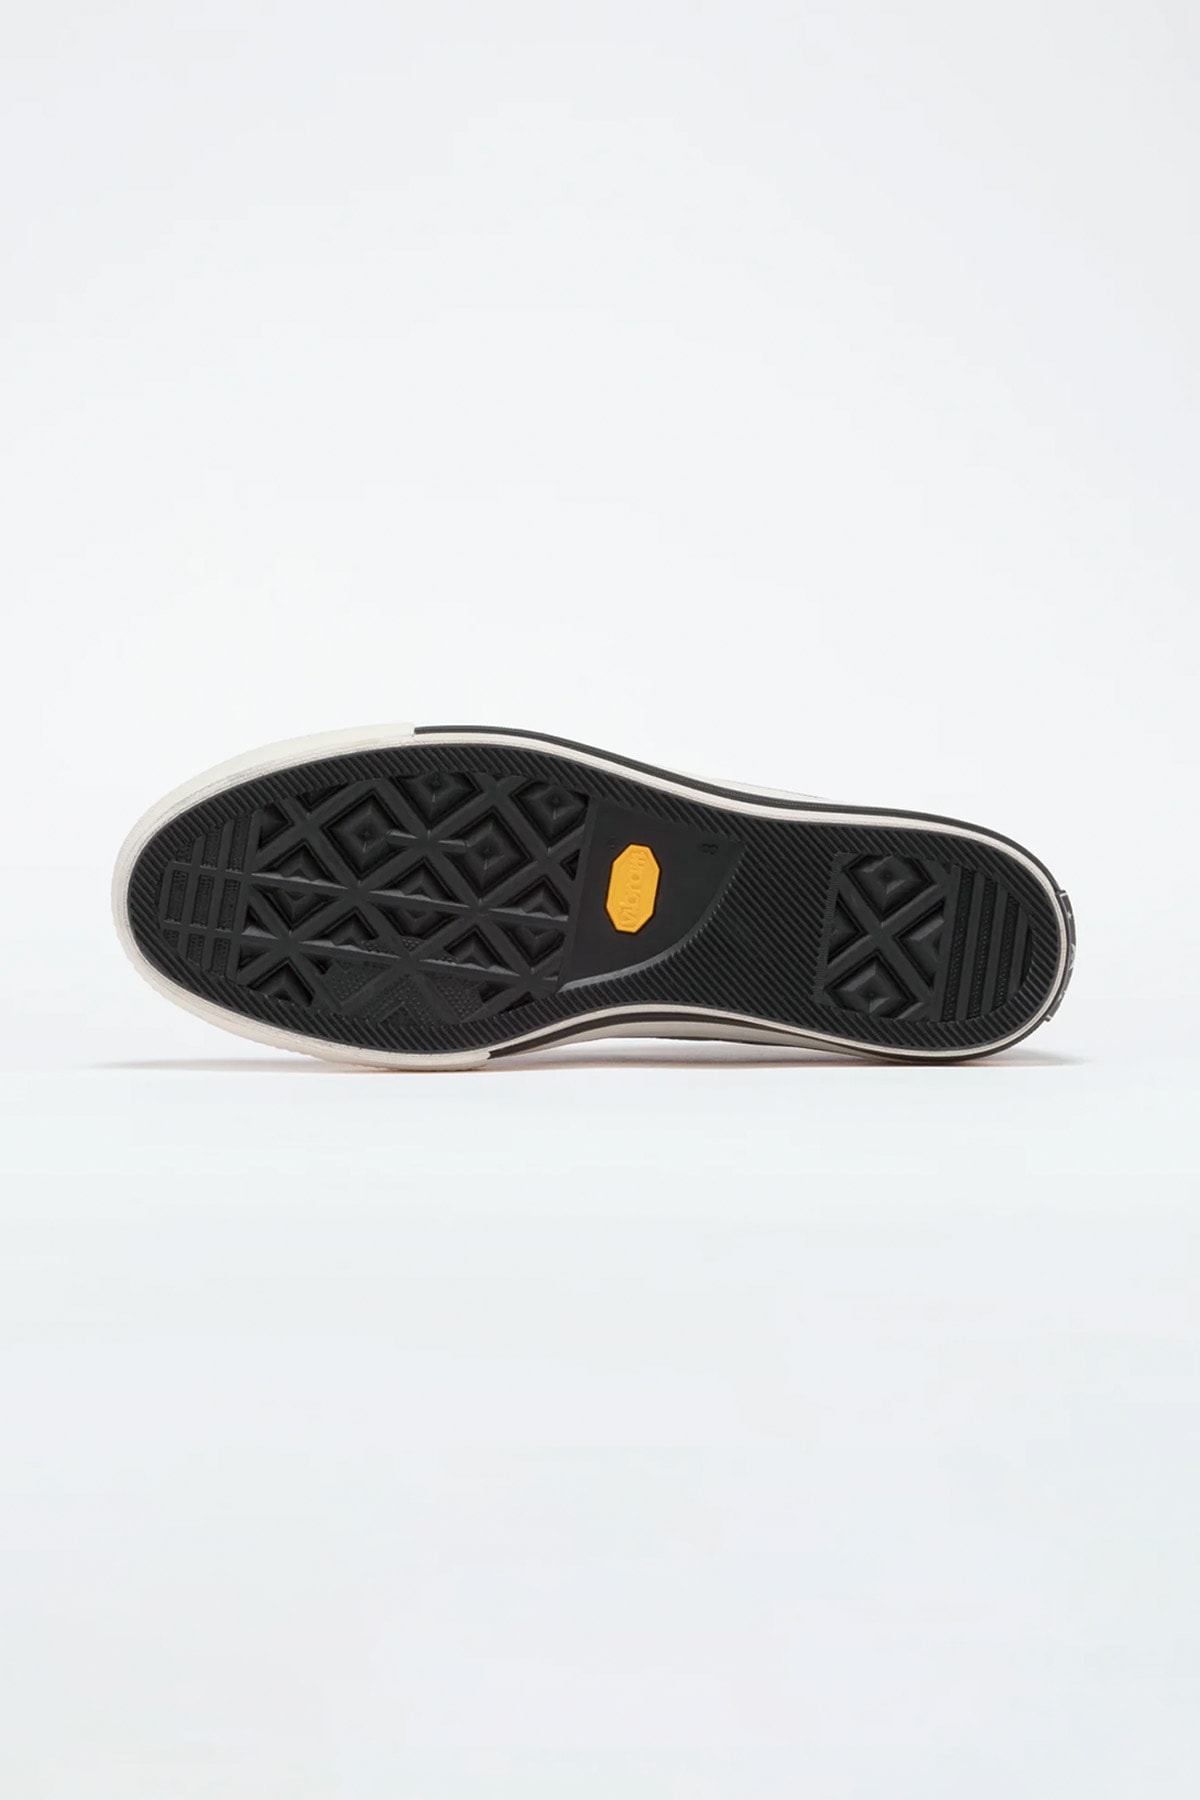 Converse 頂級支線 Addict 發表新季度 Chuck Taylor Canvas OX 鞋款